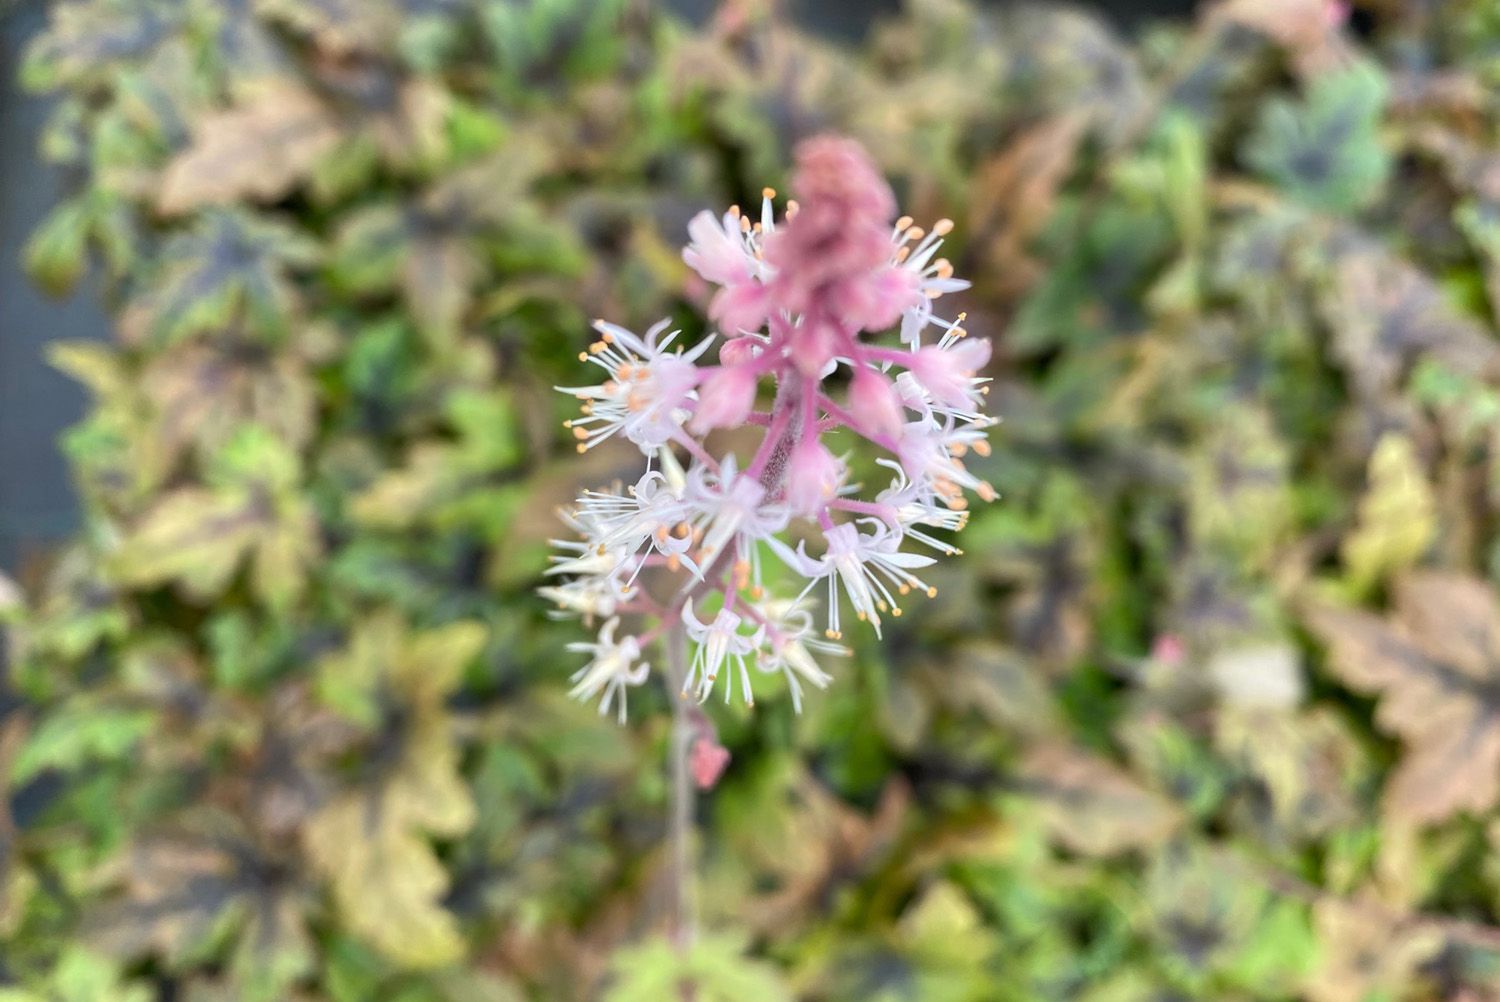 Tiarella cordifolia - Aarachtige roze bloemen